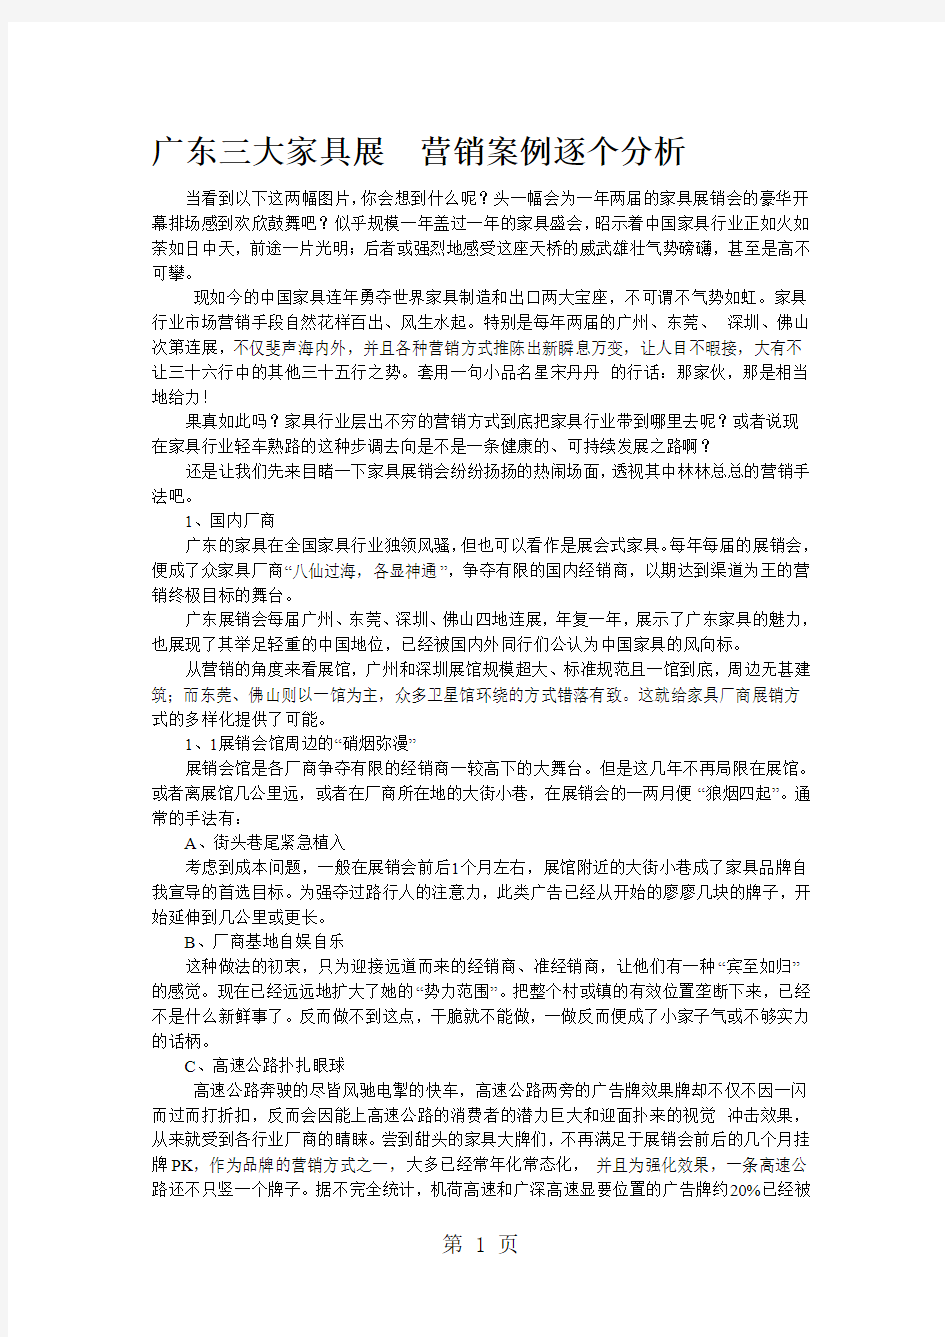 广东三大家具展营销案例逐个分析[精品]共8页文档